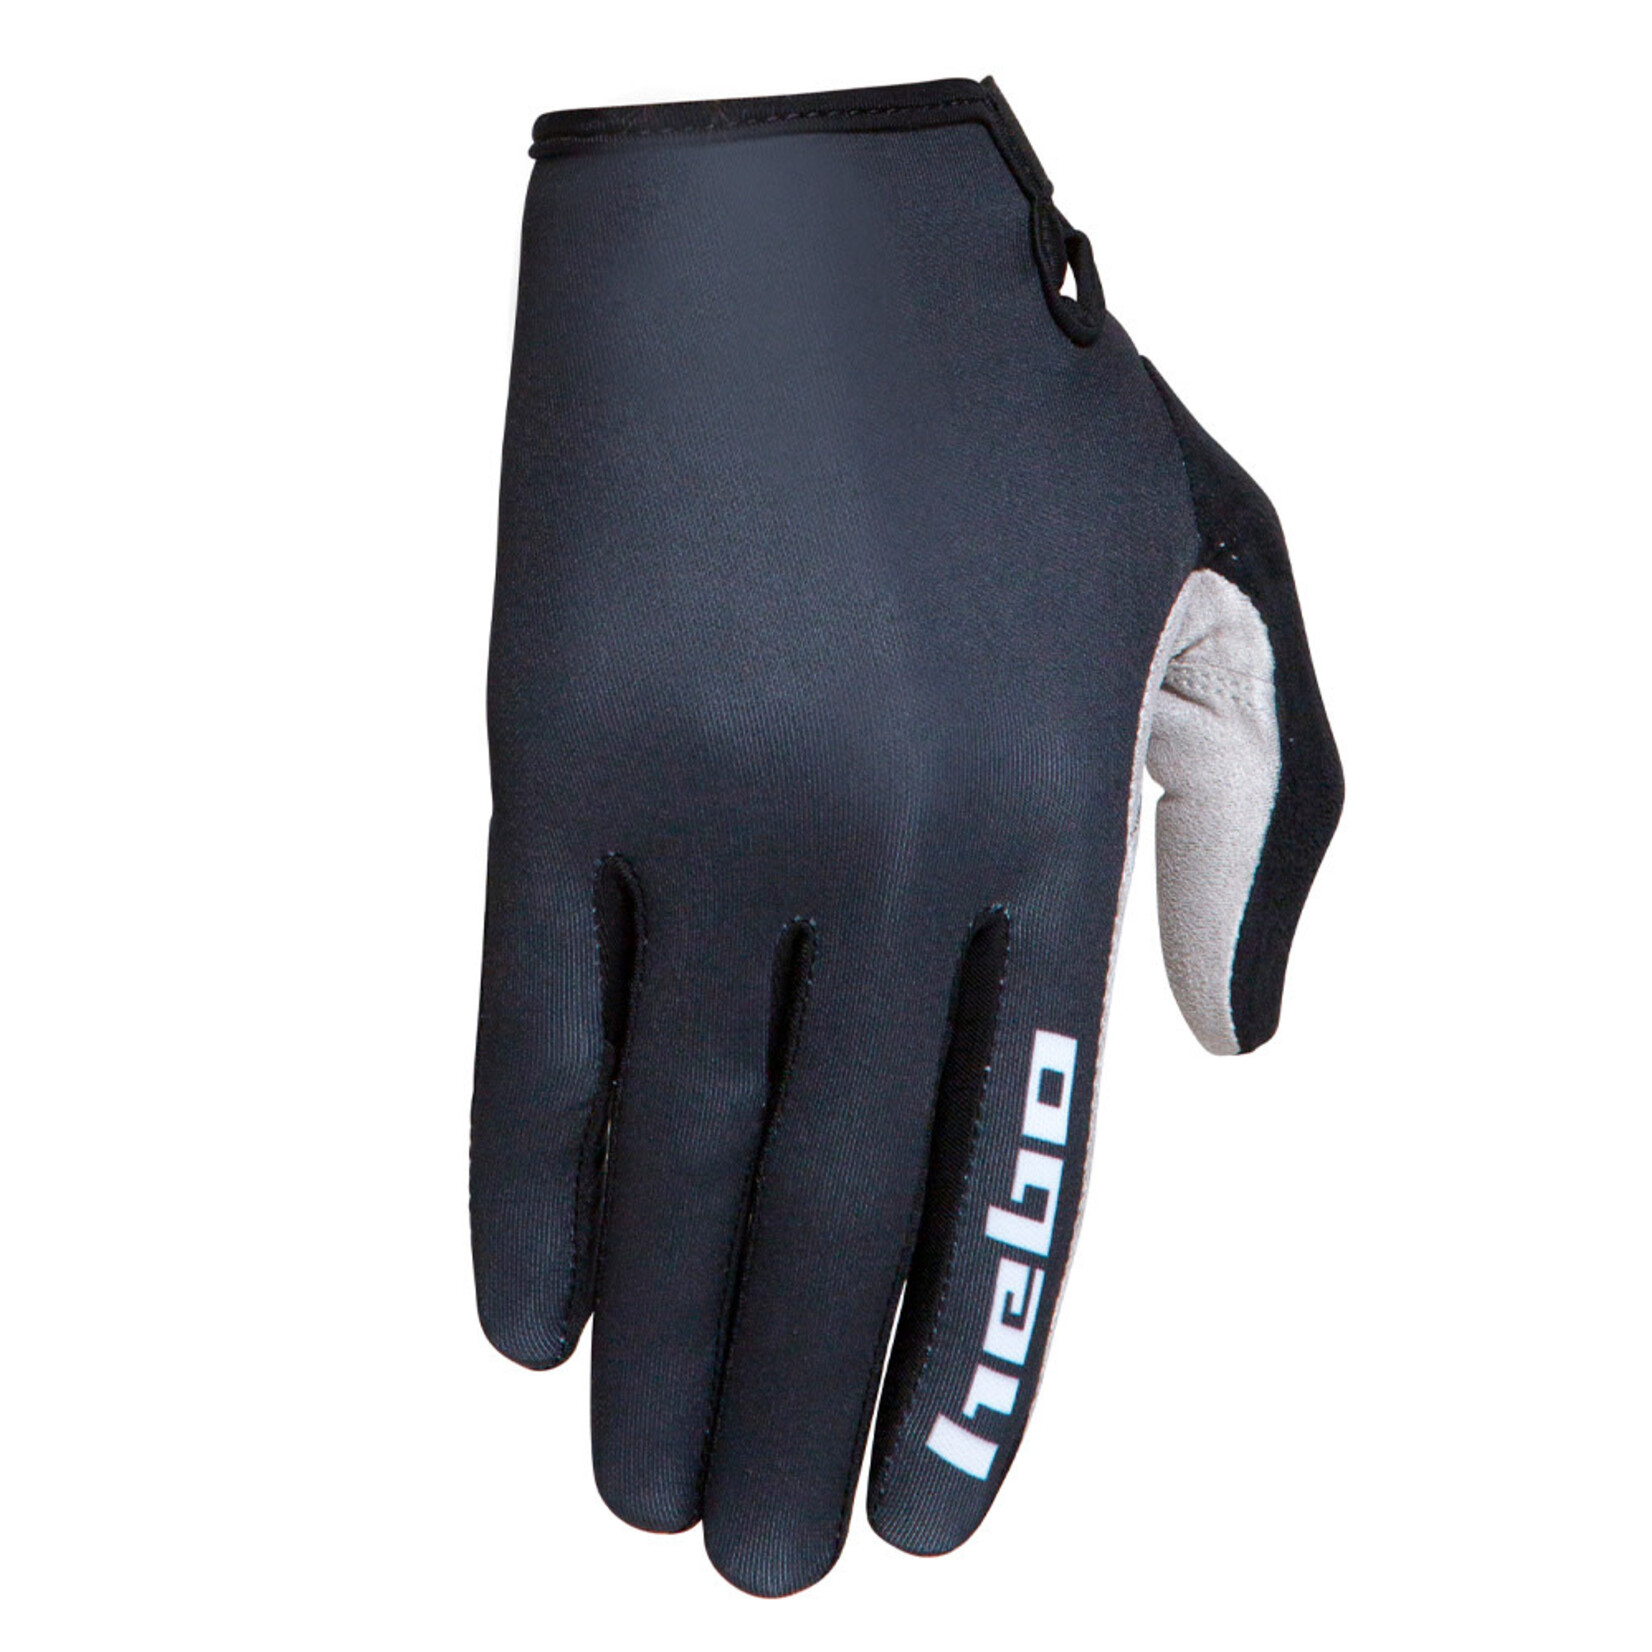 Hebo Hebo gants GR HB1006 zwart